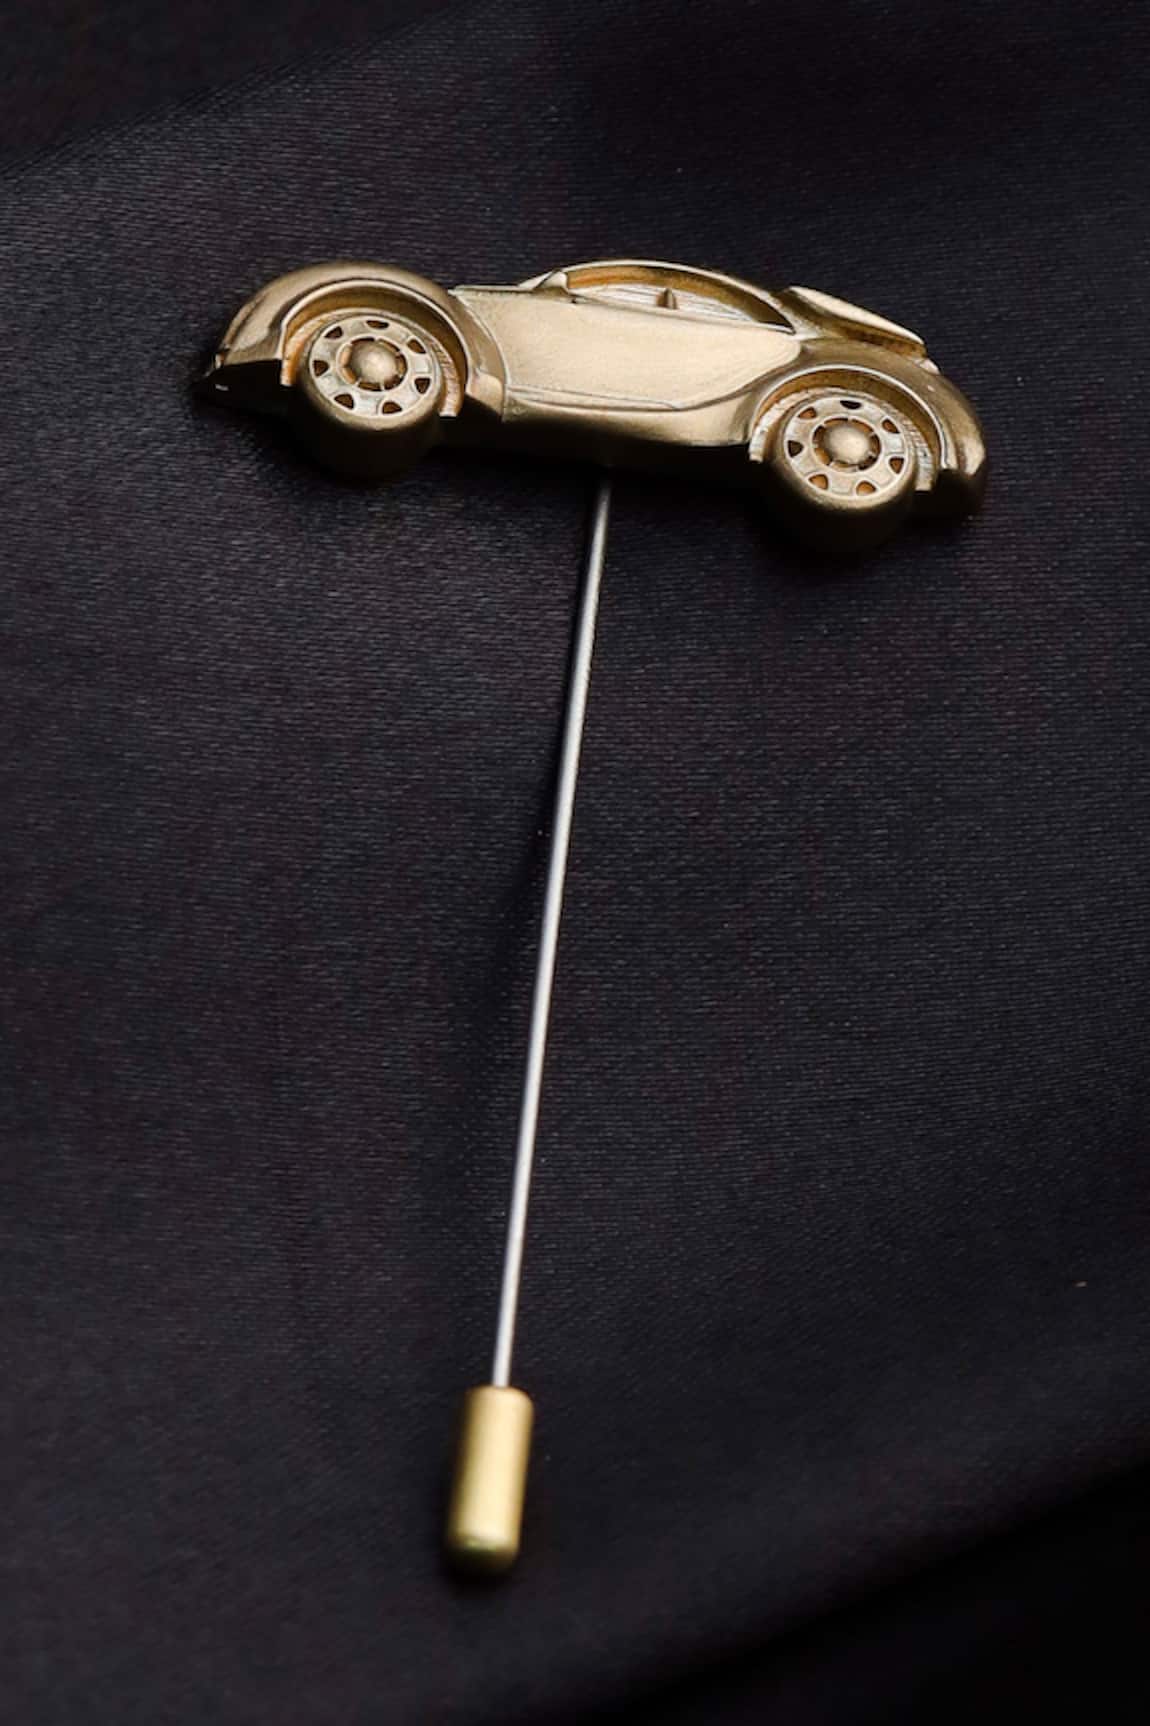 Cosa Nostraa Car Power Lapel Pin